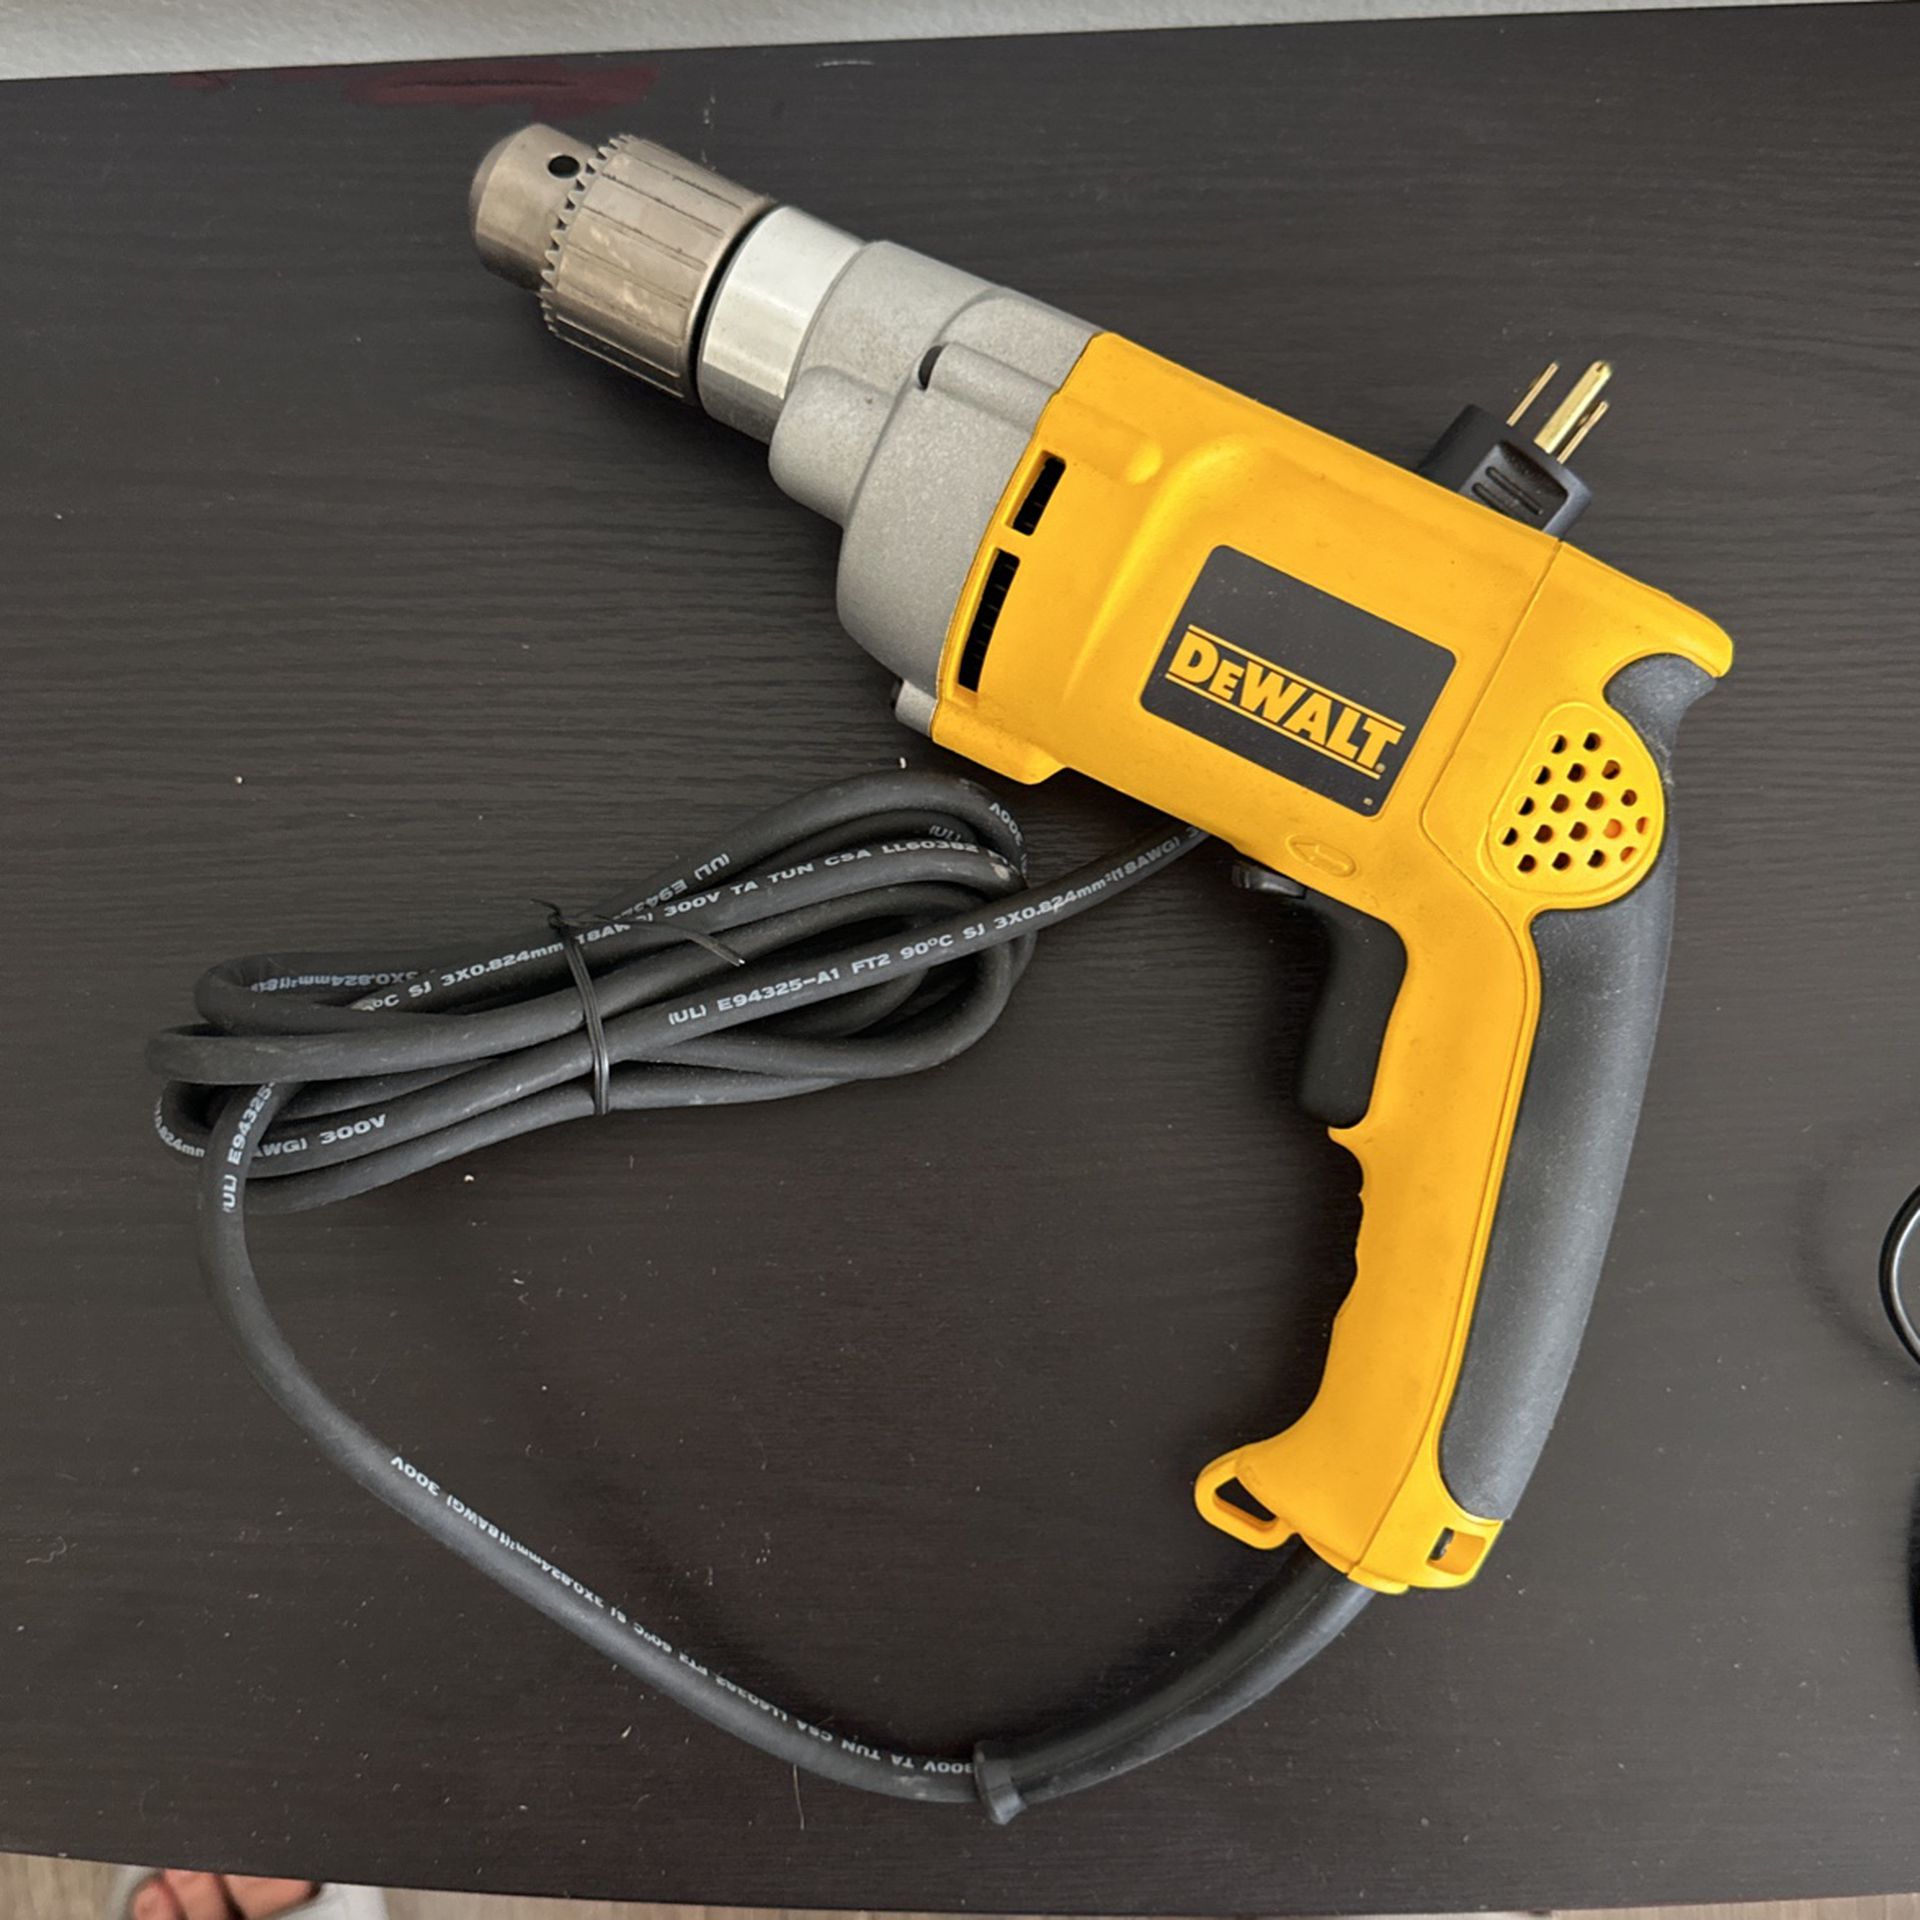 DEWALT DW236 1/2" VSR Corded Drill